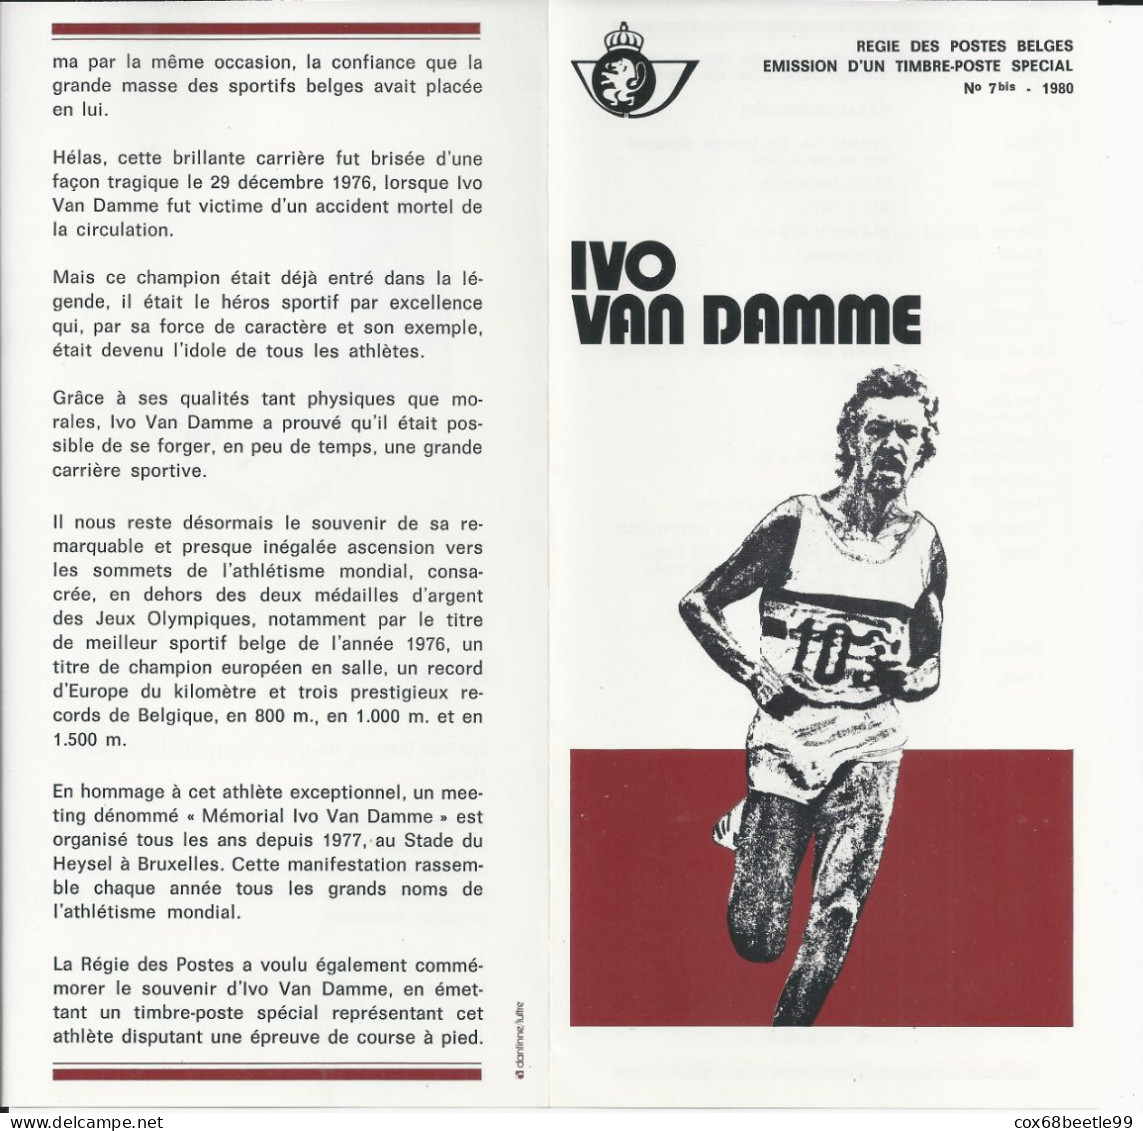 IVO VAN DAMME Belgique Feuillet De La Poste 1980 - 7 Bis FDC Cob 1974 03-05-1980 LIEGE Club Philatélique Le Perron - Post-Faltblätter